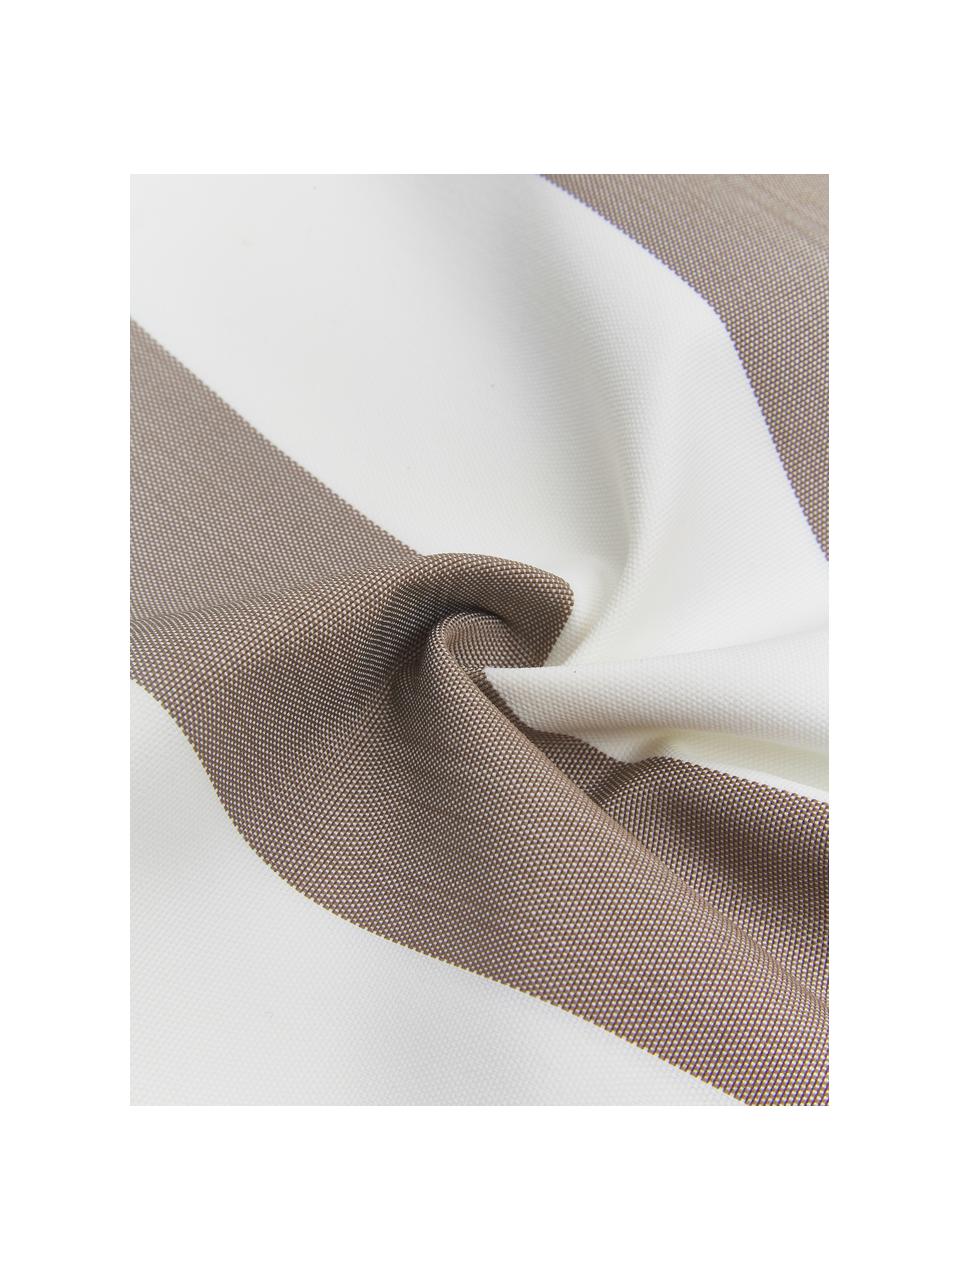 Gestreepte outdoor kussenhoes Santorin in grijs/wit, 100% polypropyleen, Taupe, wit, B 40 x L 40 cm